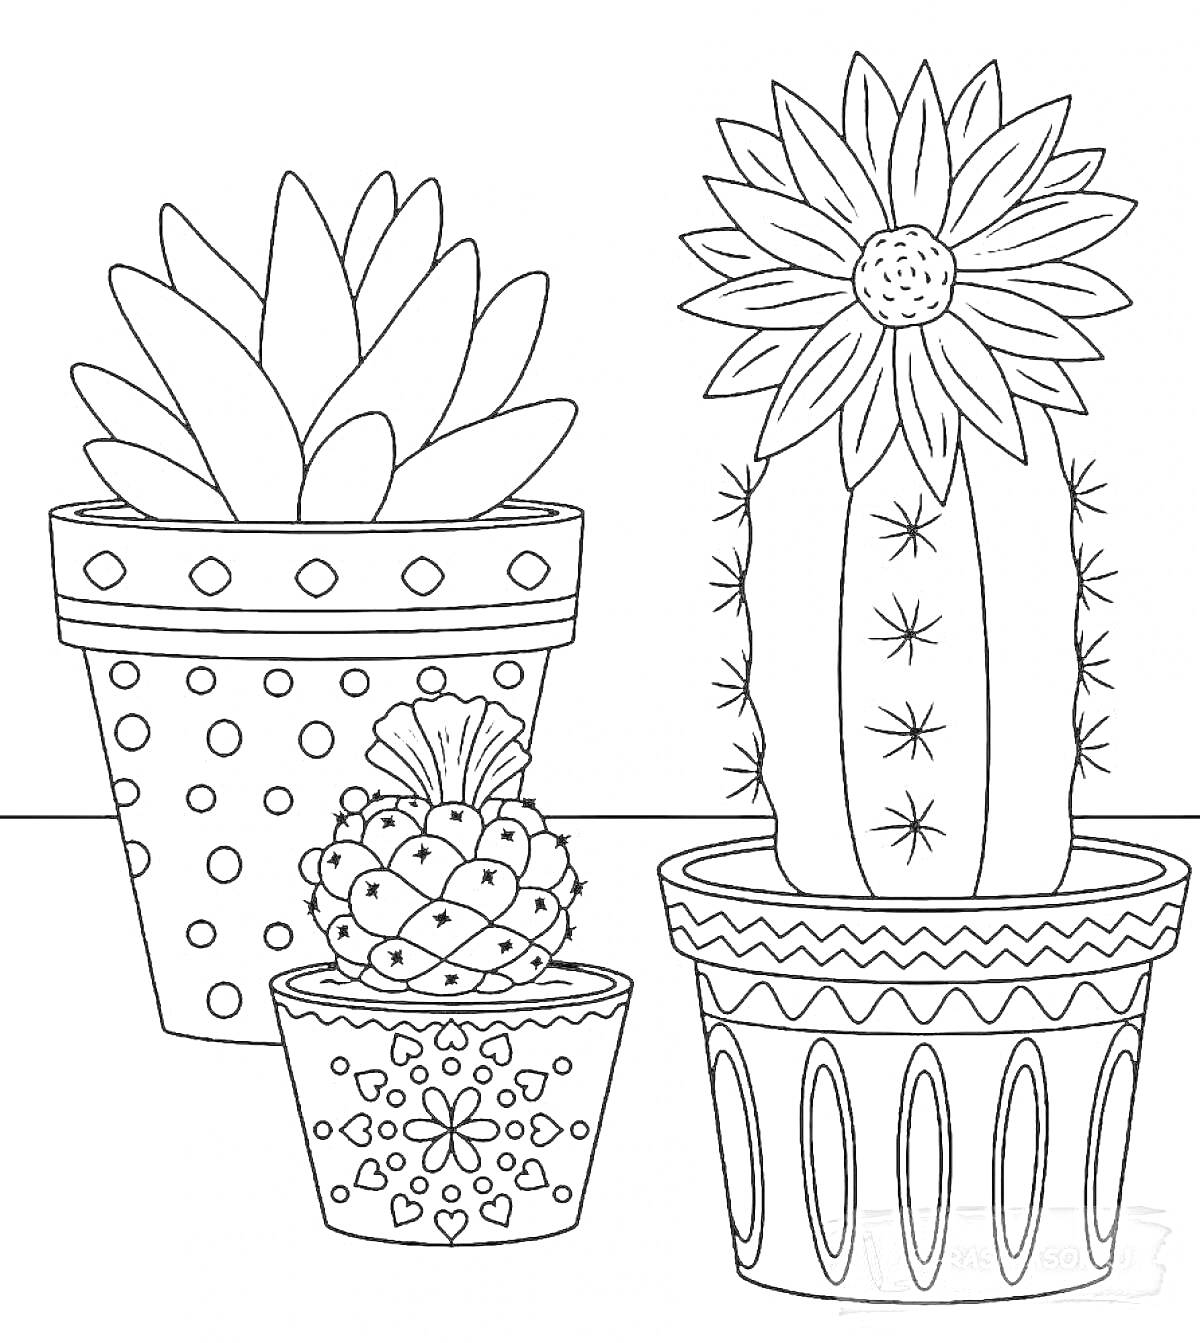 Красивая раскраска с комнатными растениями - три горшка с суккулентом, кактусом с цветком и еще одним узорчатым кактусом